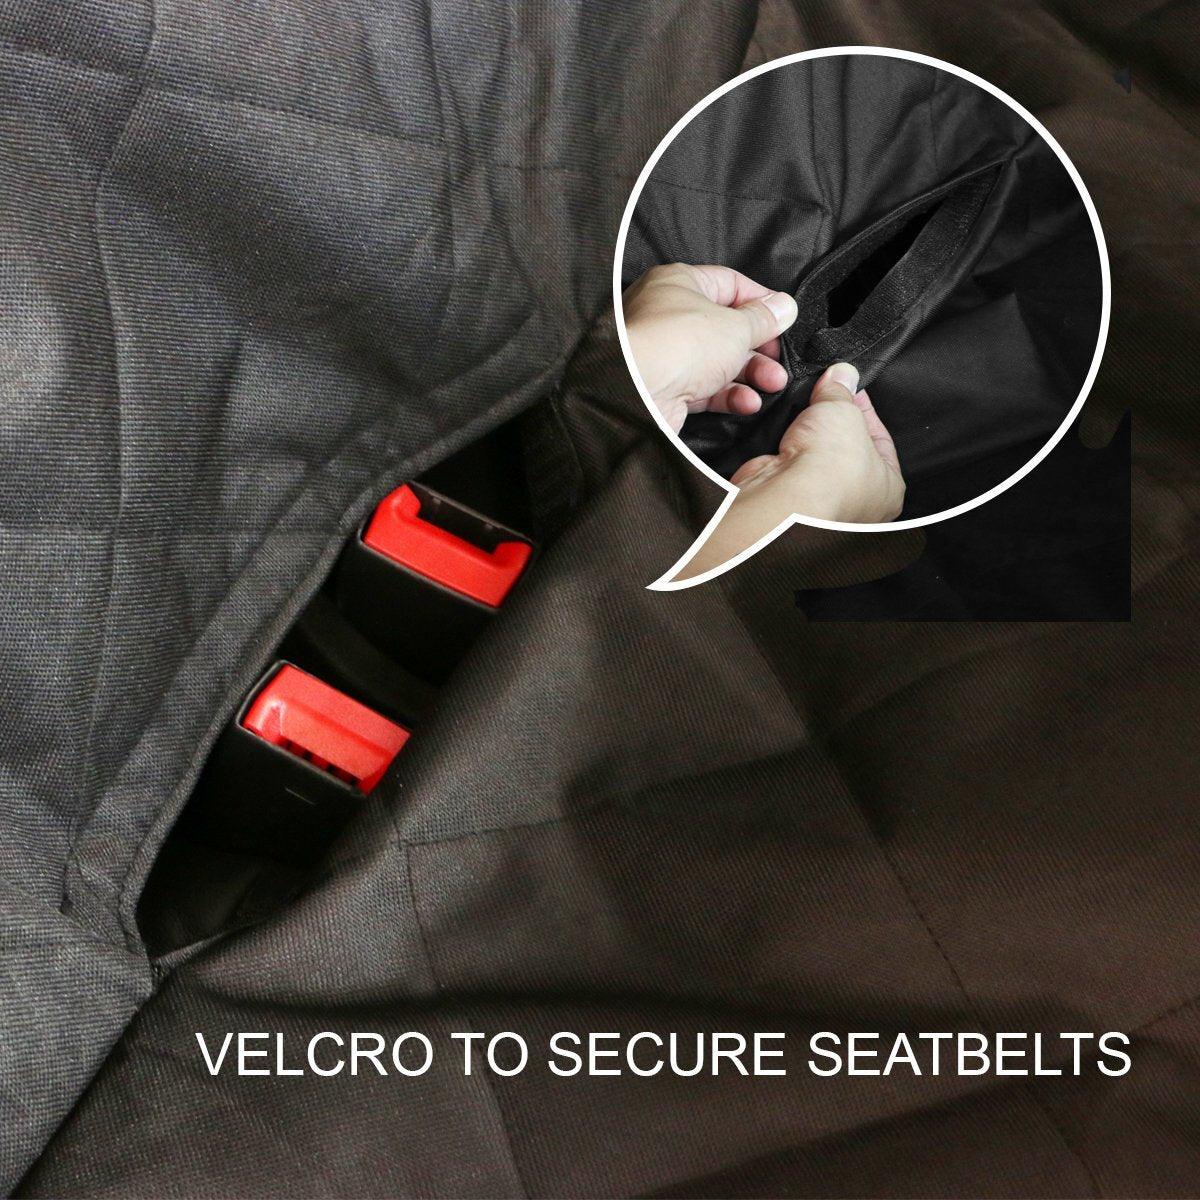 Waterproof Premium Pet Cat Dog Back Car Seat Cover Hammock NonSlip Mat Protector